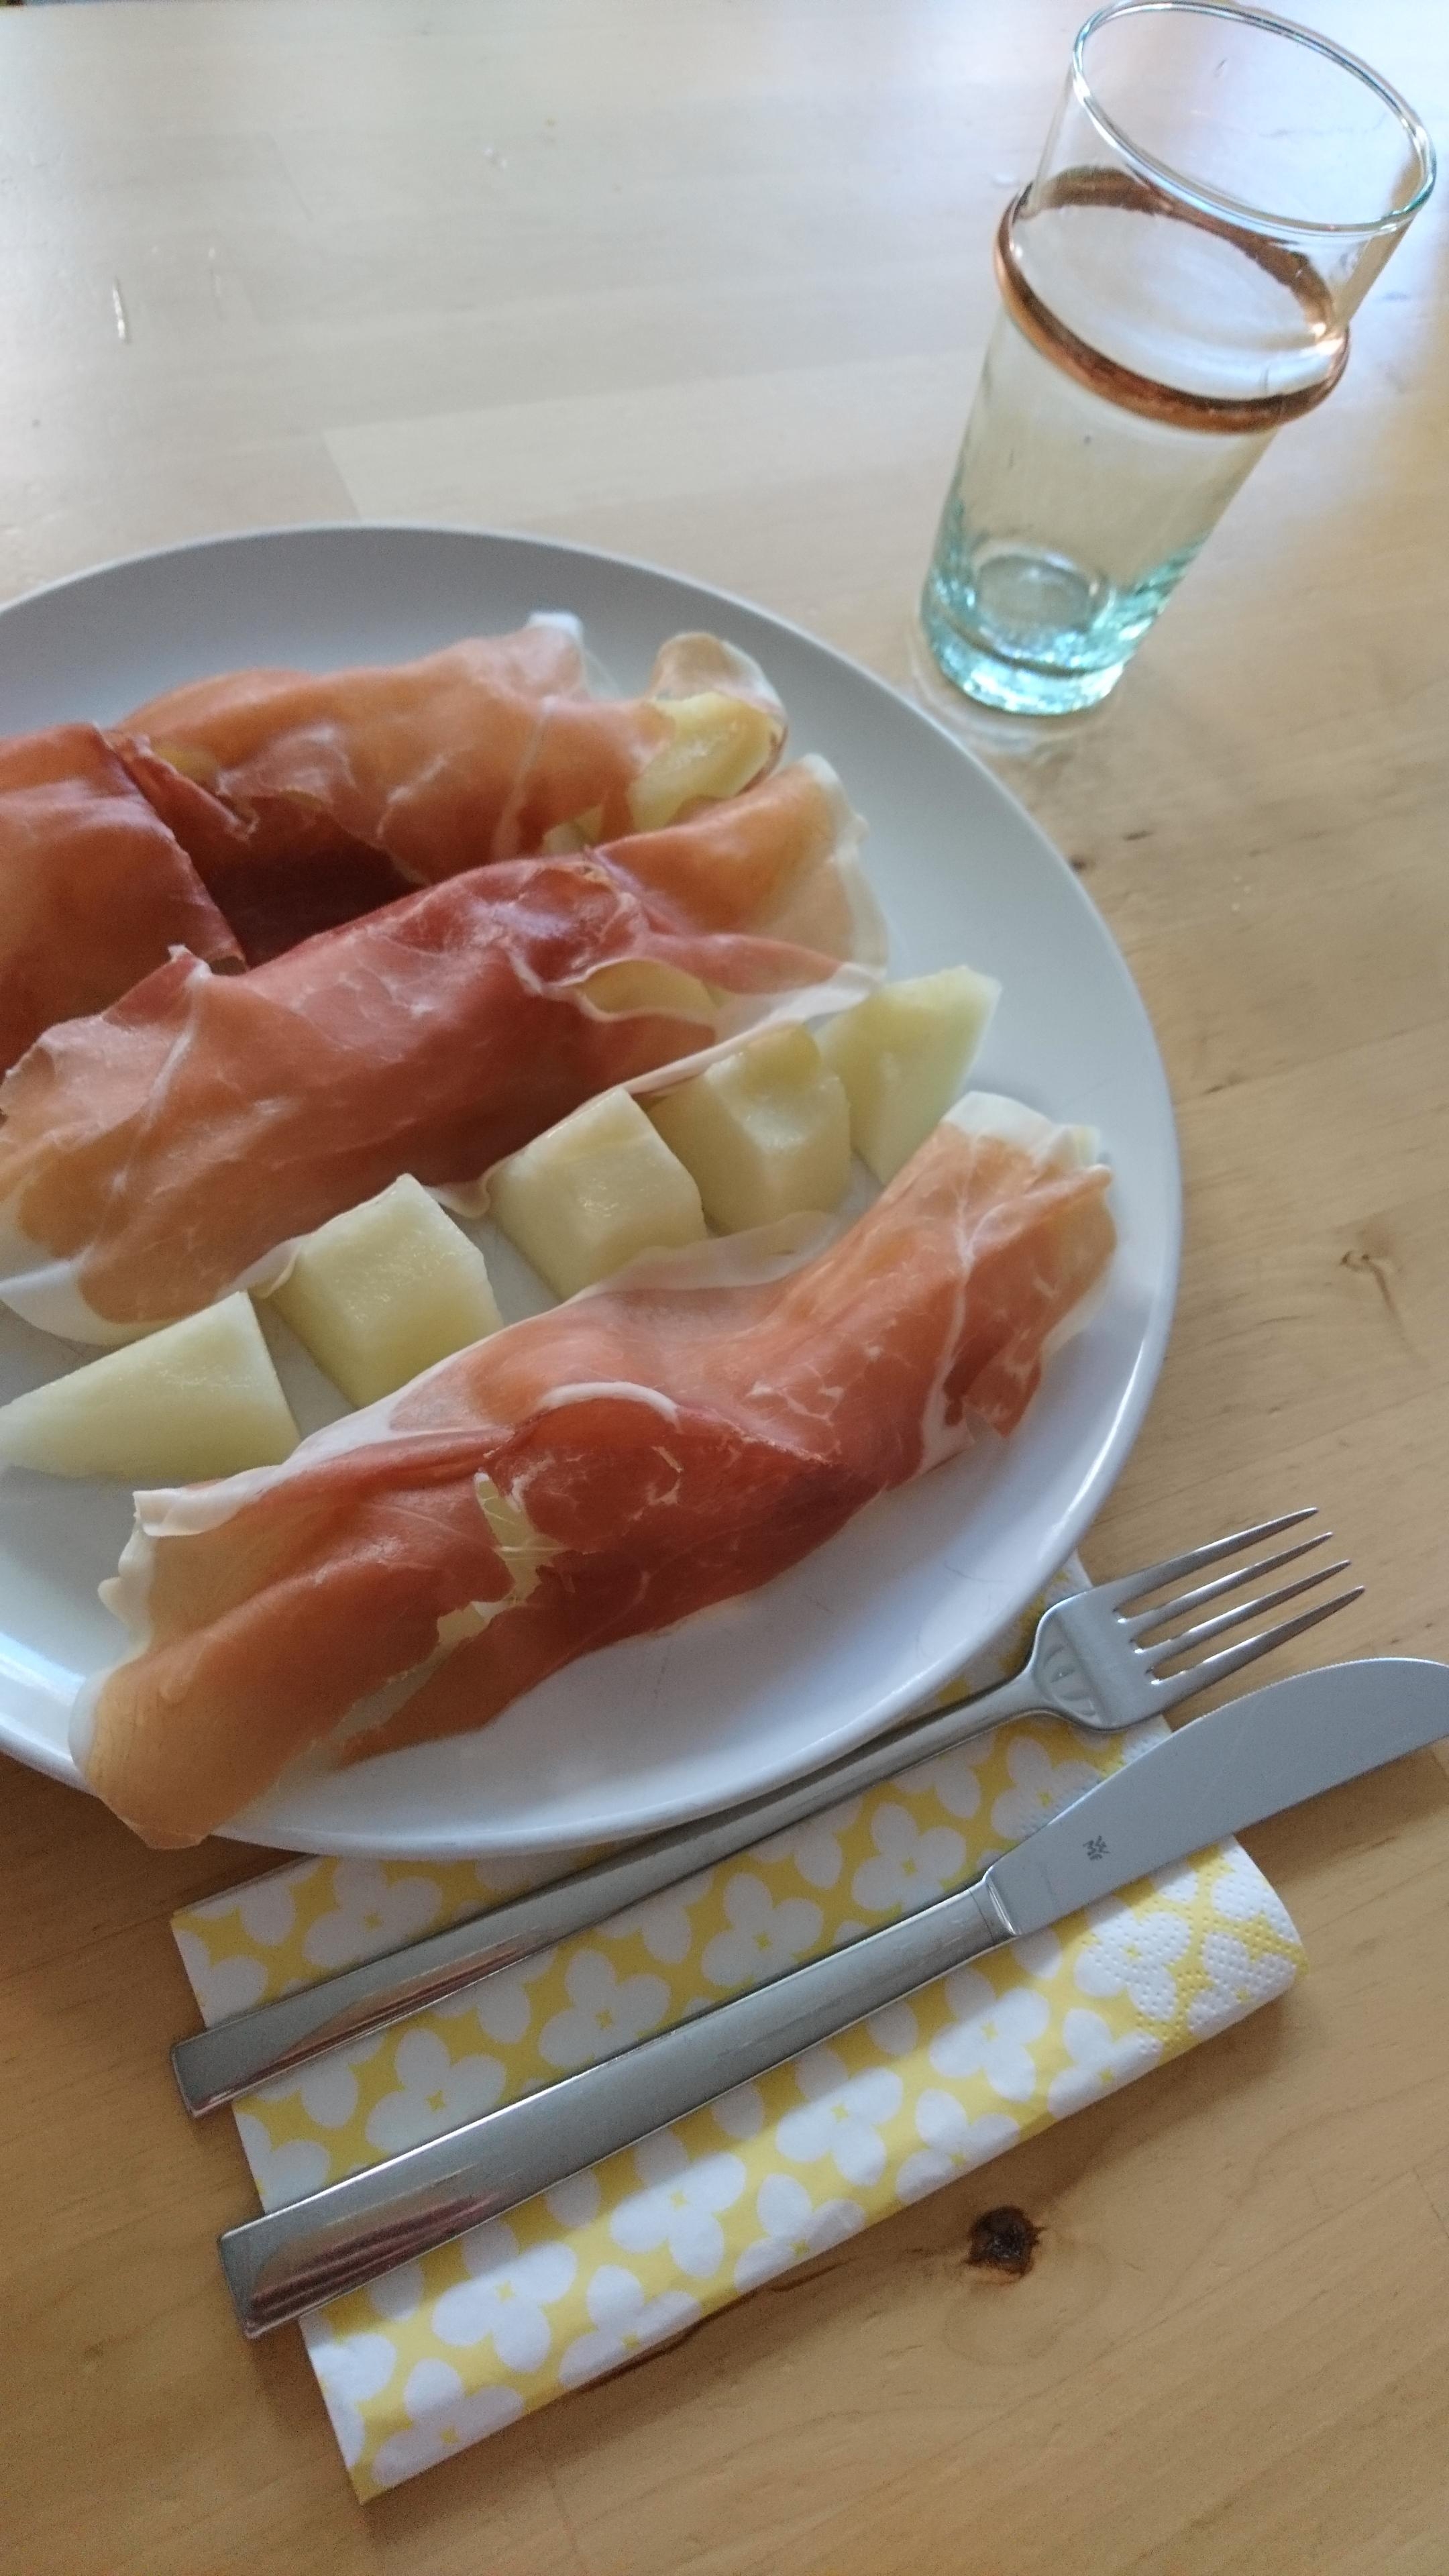 Mittags Flammlachs, abends Honigmelone mit Parmaschinken 🍴
Läuft bei mir 🤣

PS: Ich liebe marokkanische Gläser 